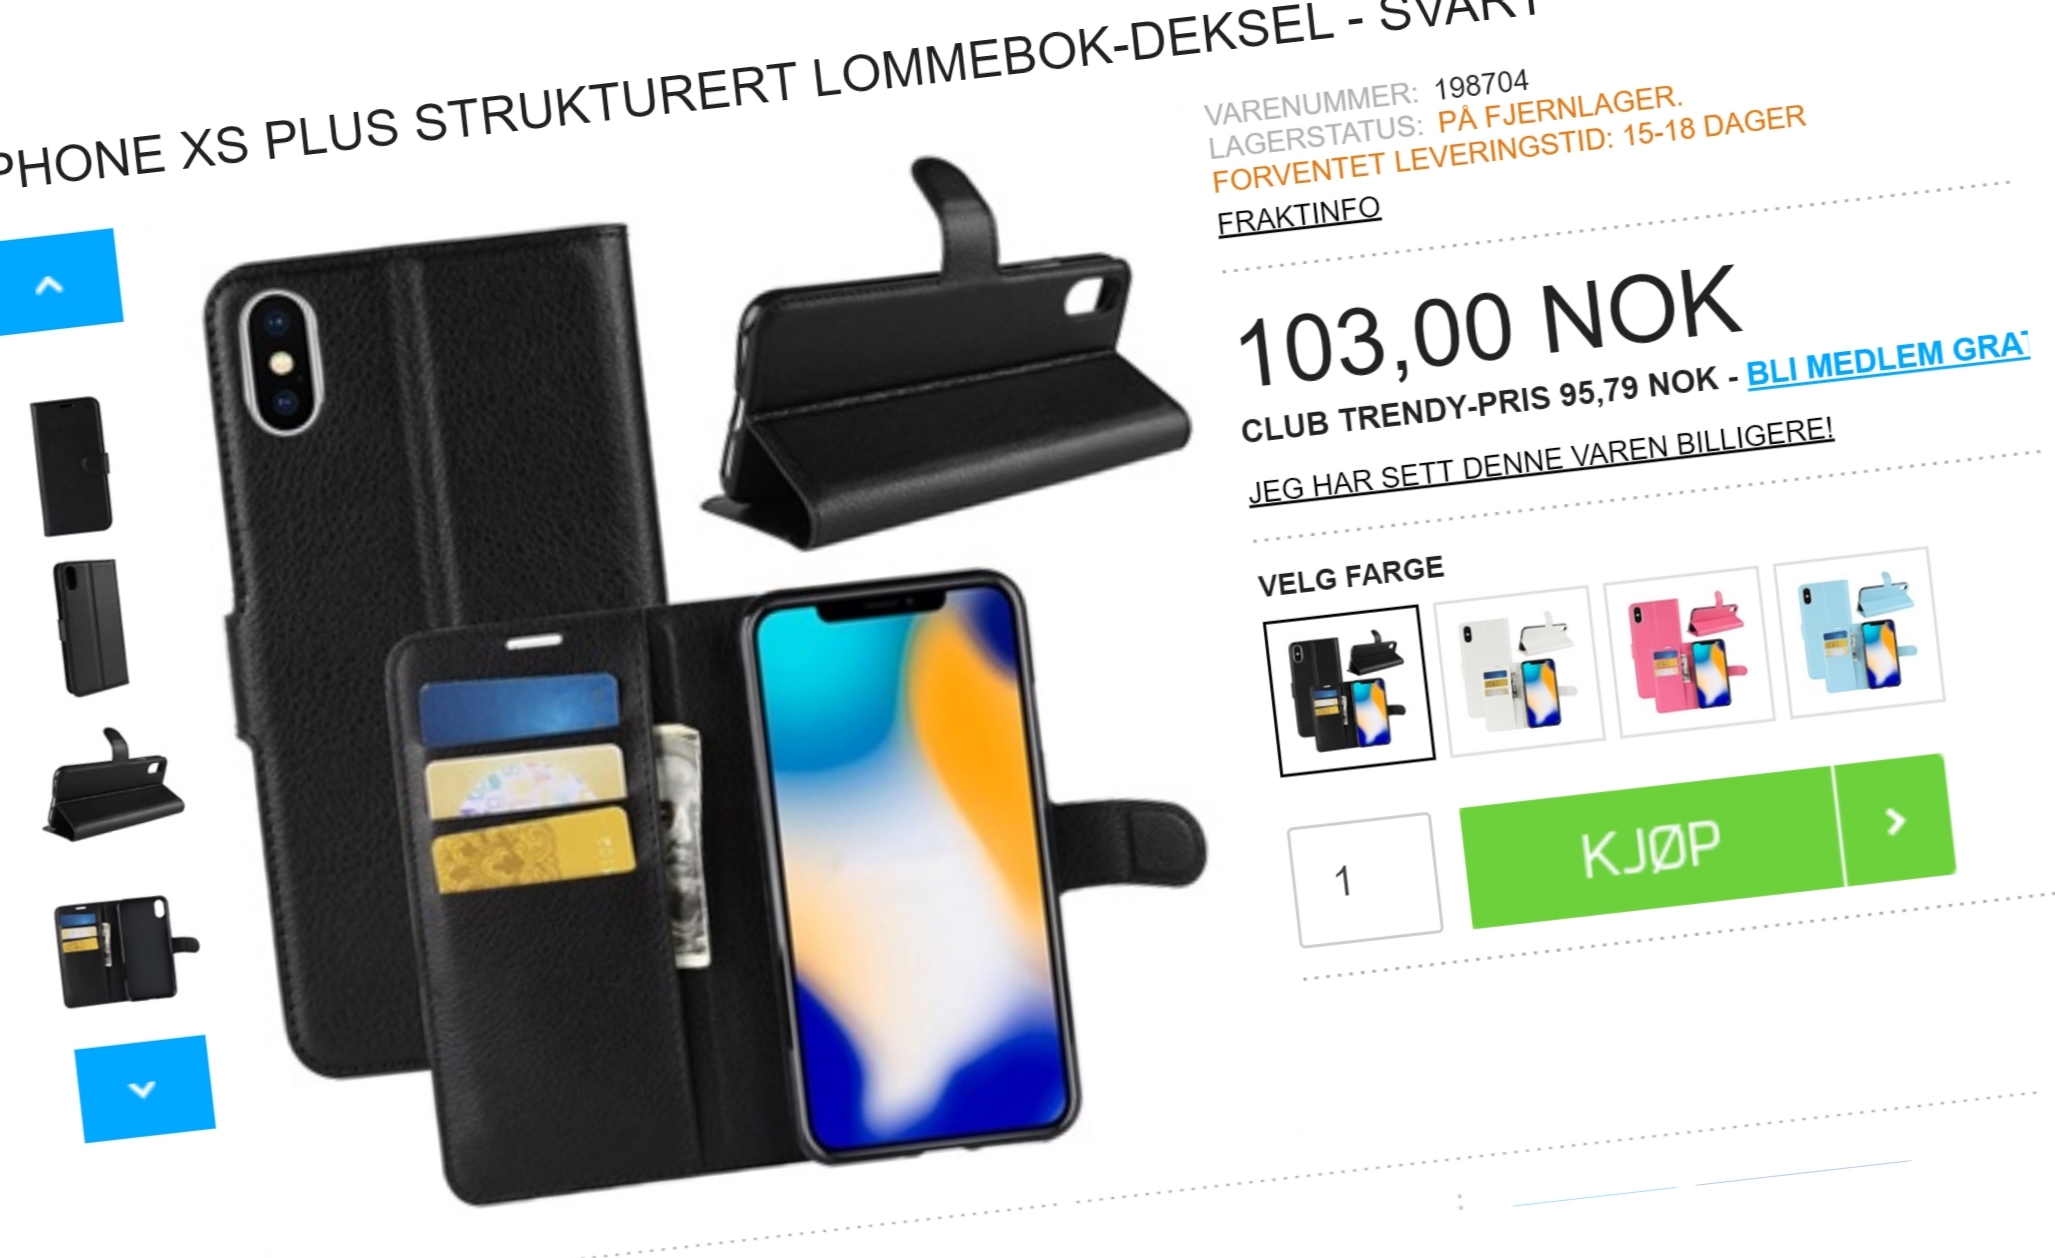 Norsk nettbutikk med iPhone XS Plus-tilbehør - den nye iPhone-modellen kommer ikke før i oktober